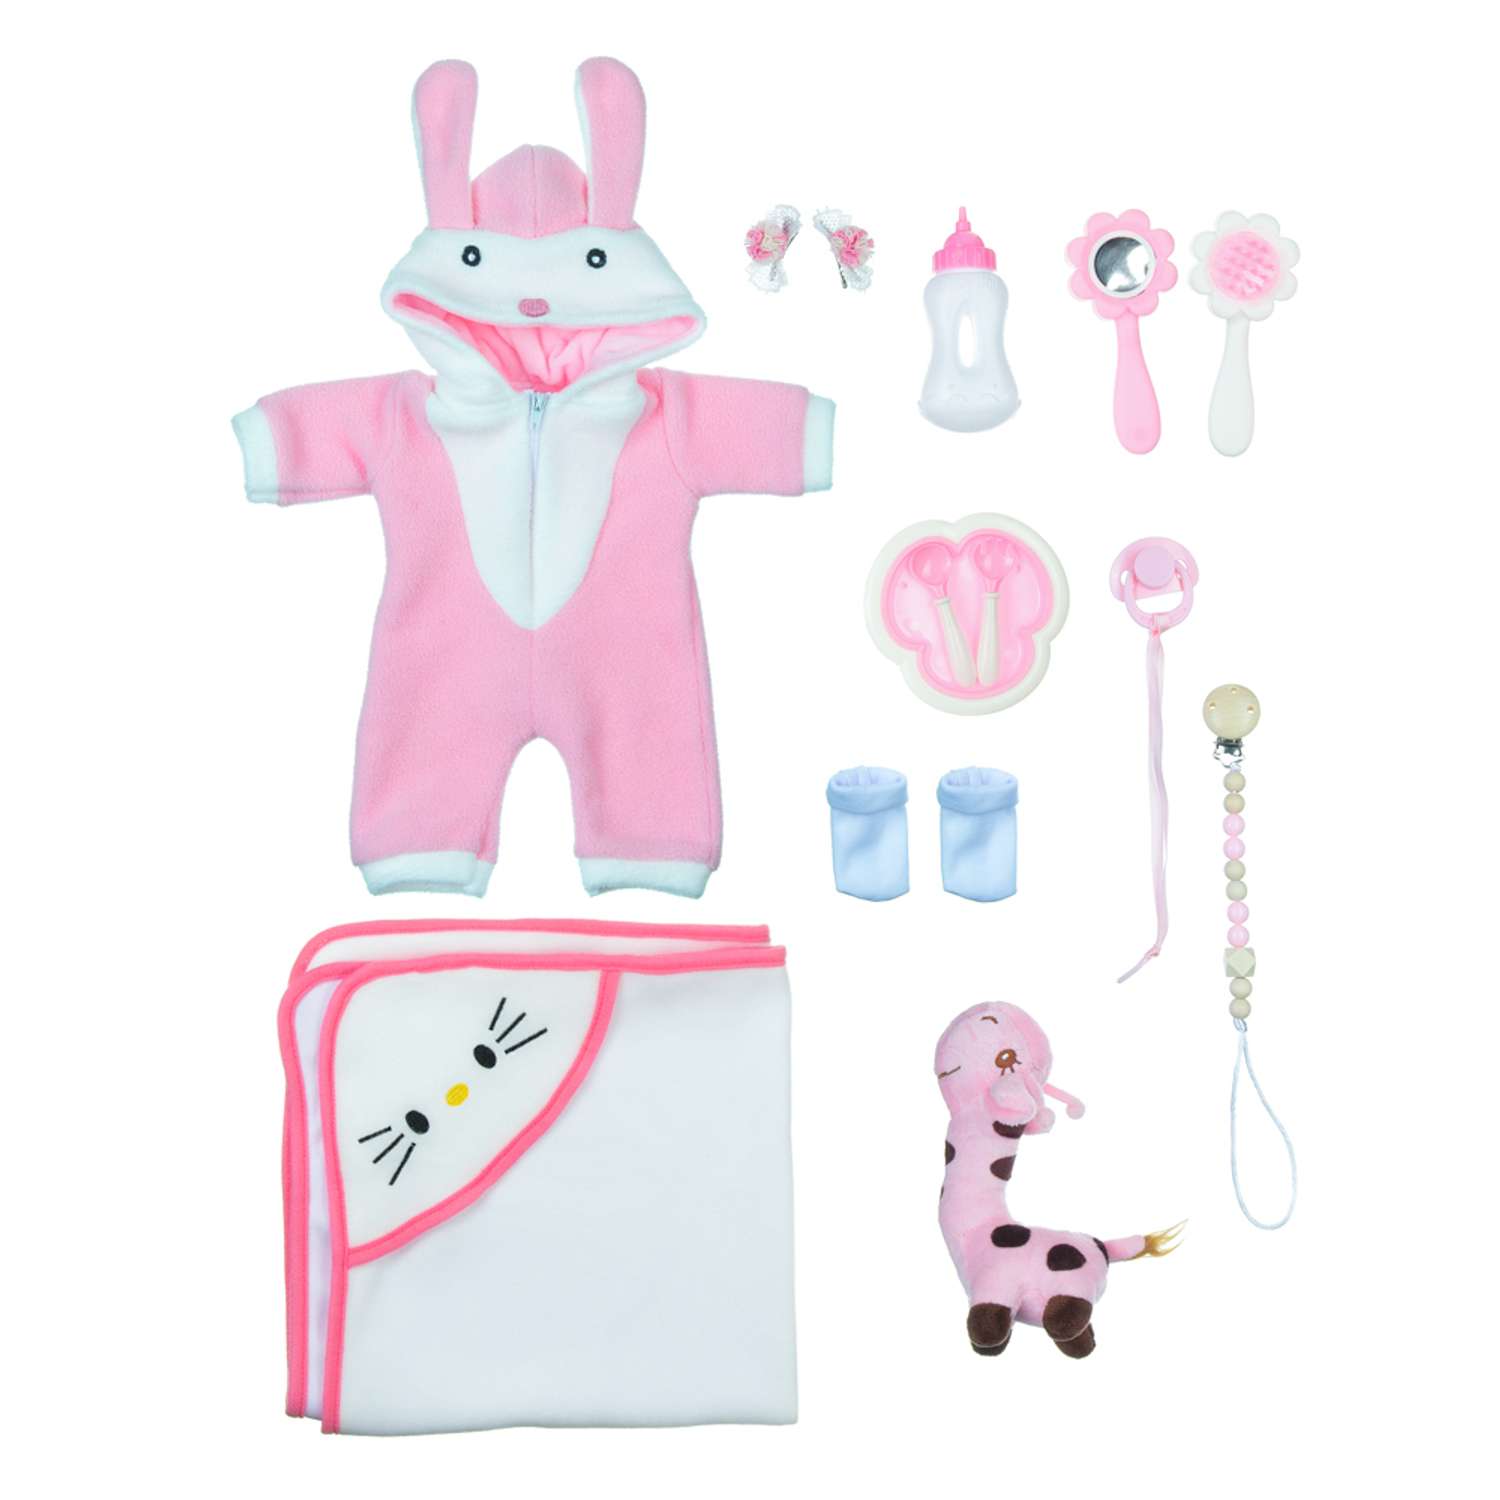 Кукла Реборн QA BABY Яна девочка интерактивная Пупс набор игрушки для ванной для девочки 38 см 3812 - фото 15